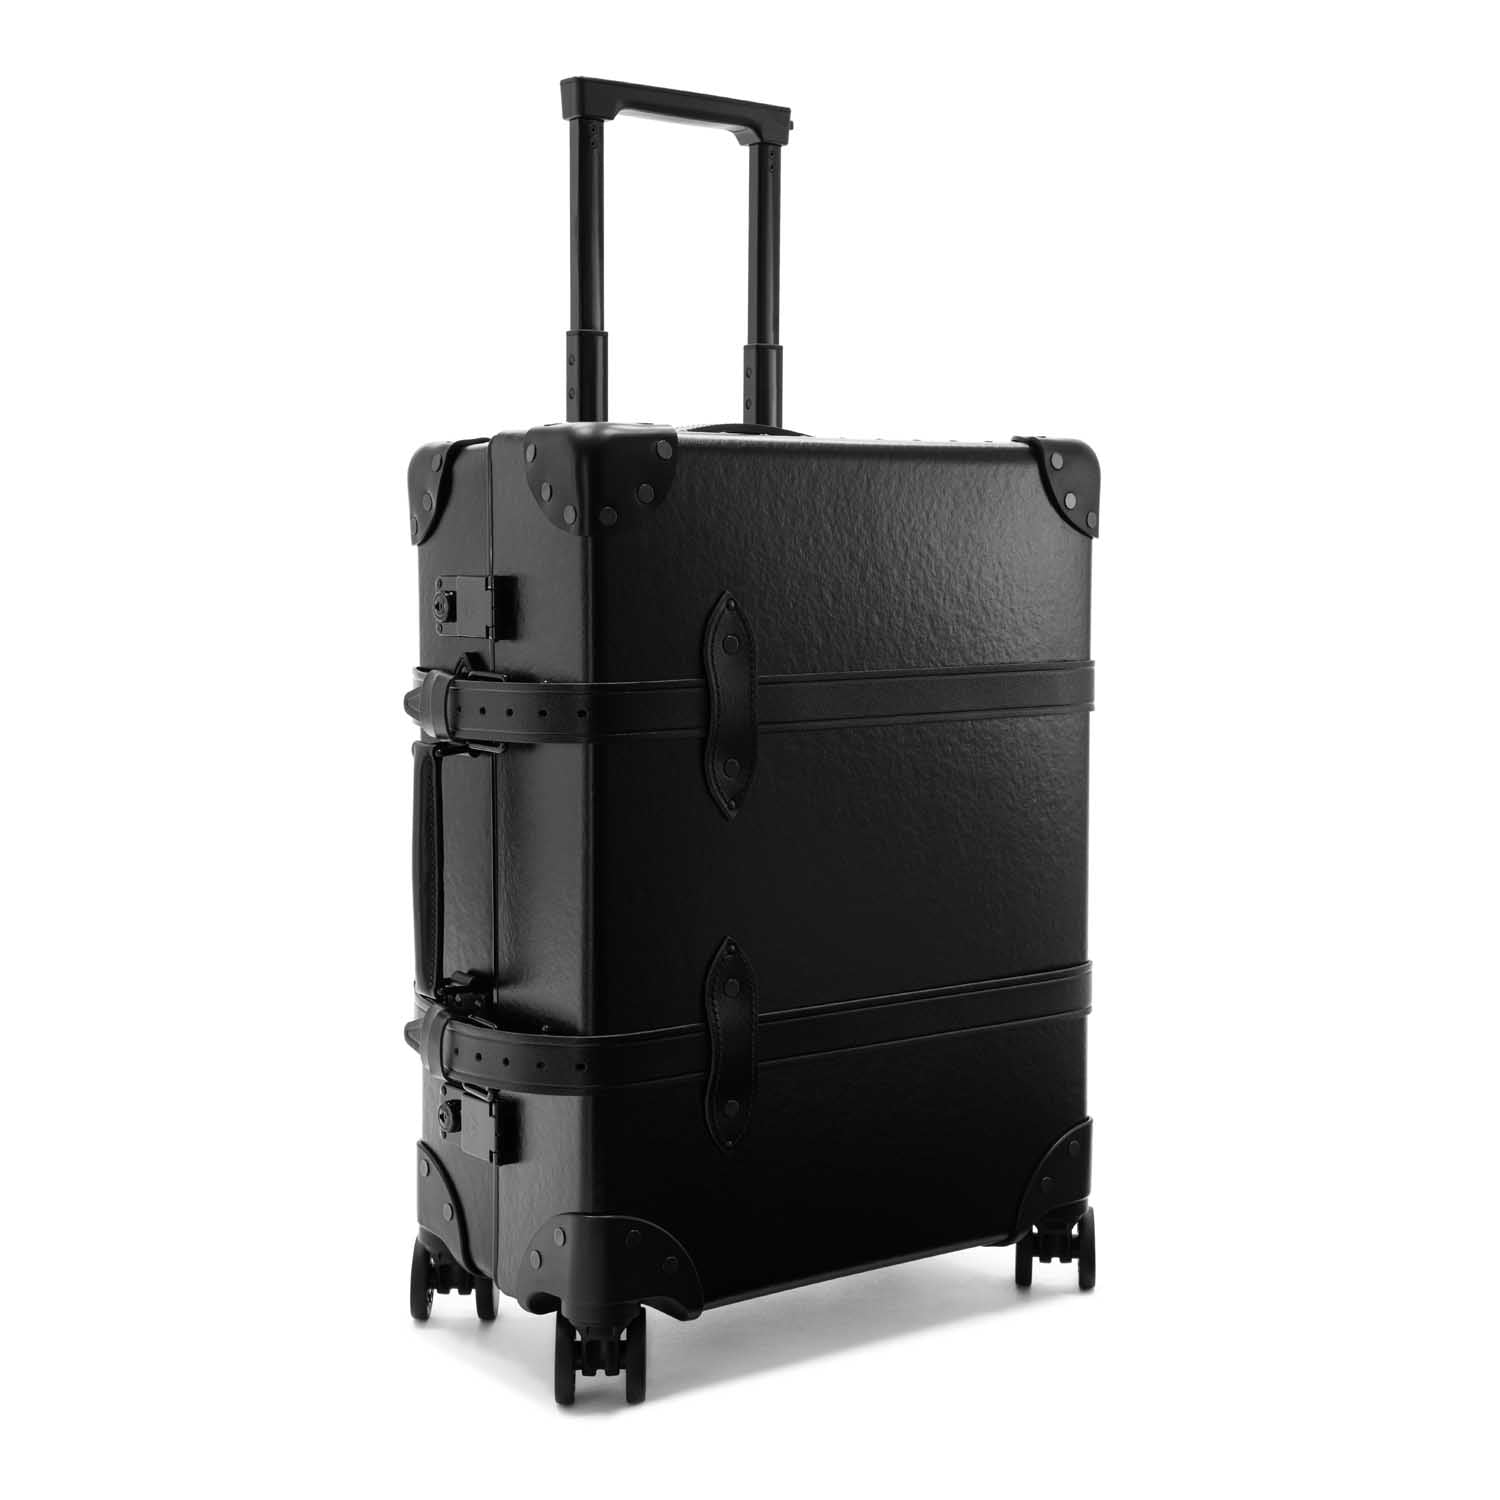 グローブトロッター スーツケース トランク キャリー 黒系✕ボルドーバッグサイズA4サイズ収納可